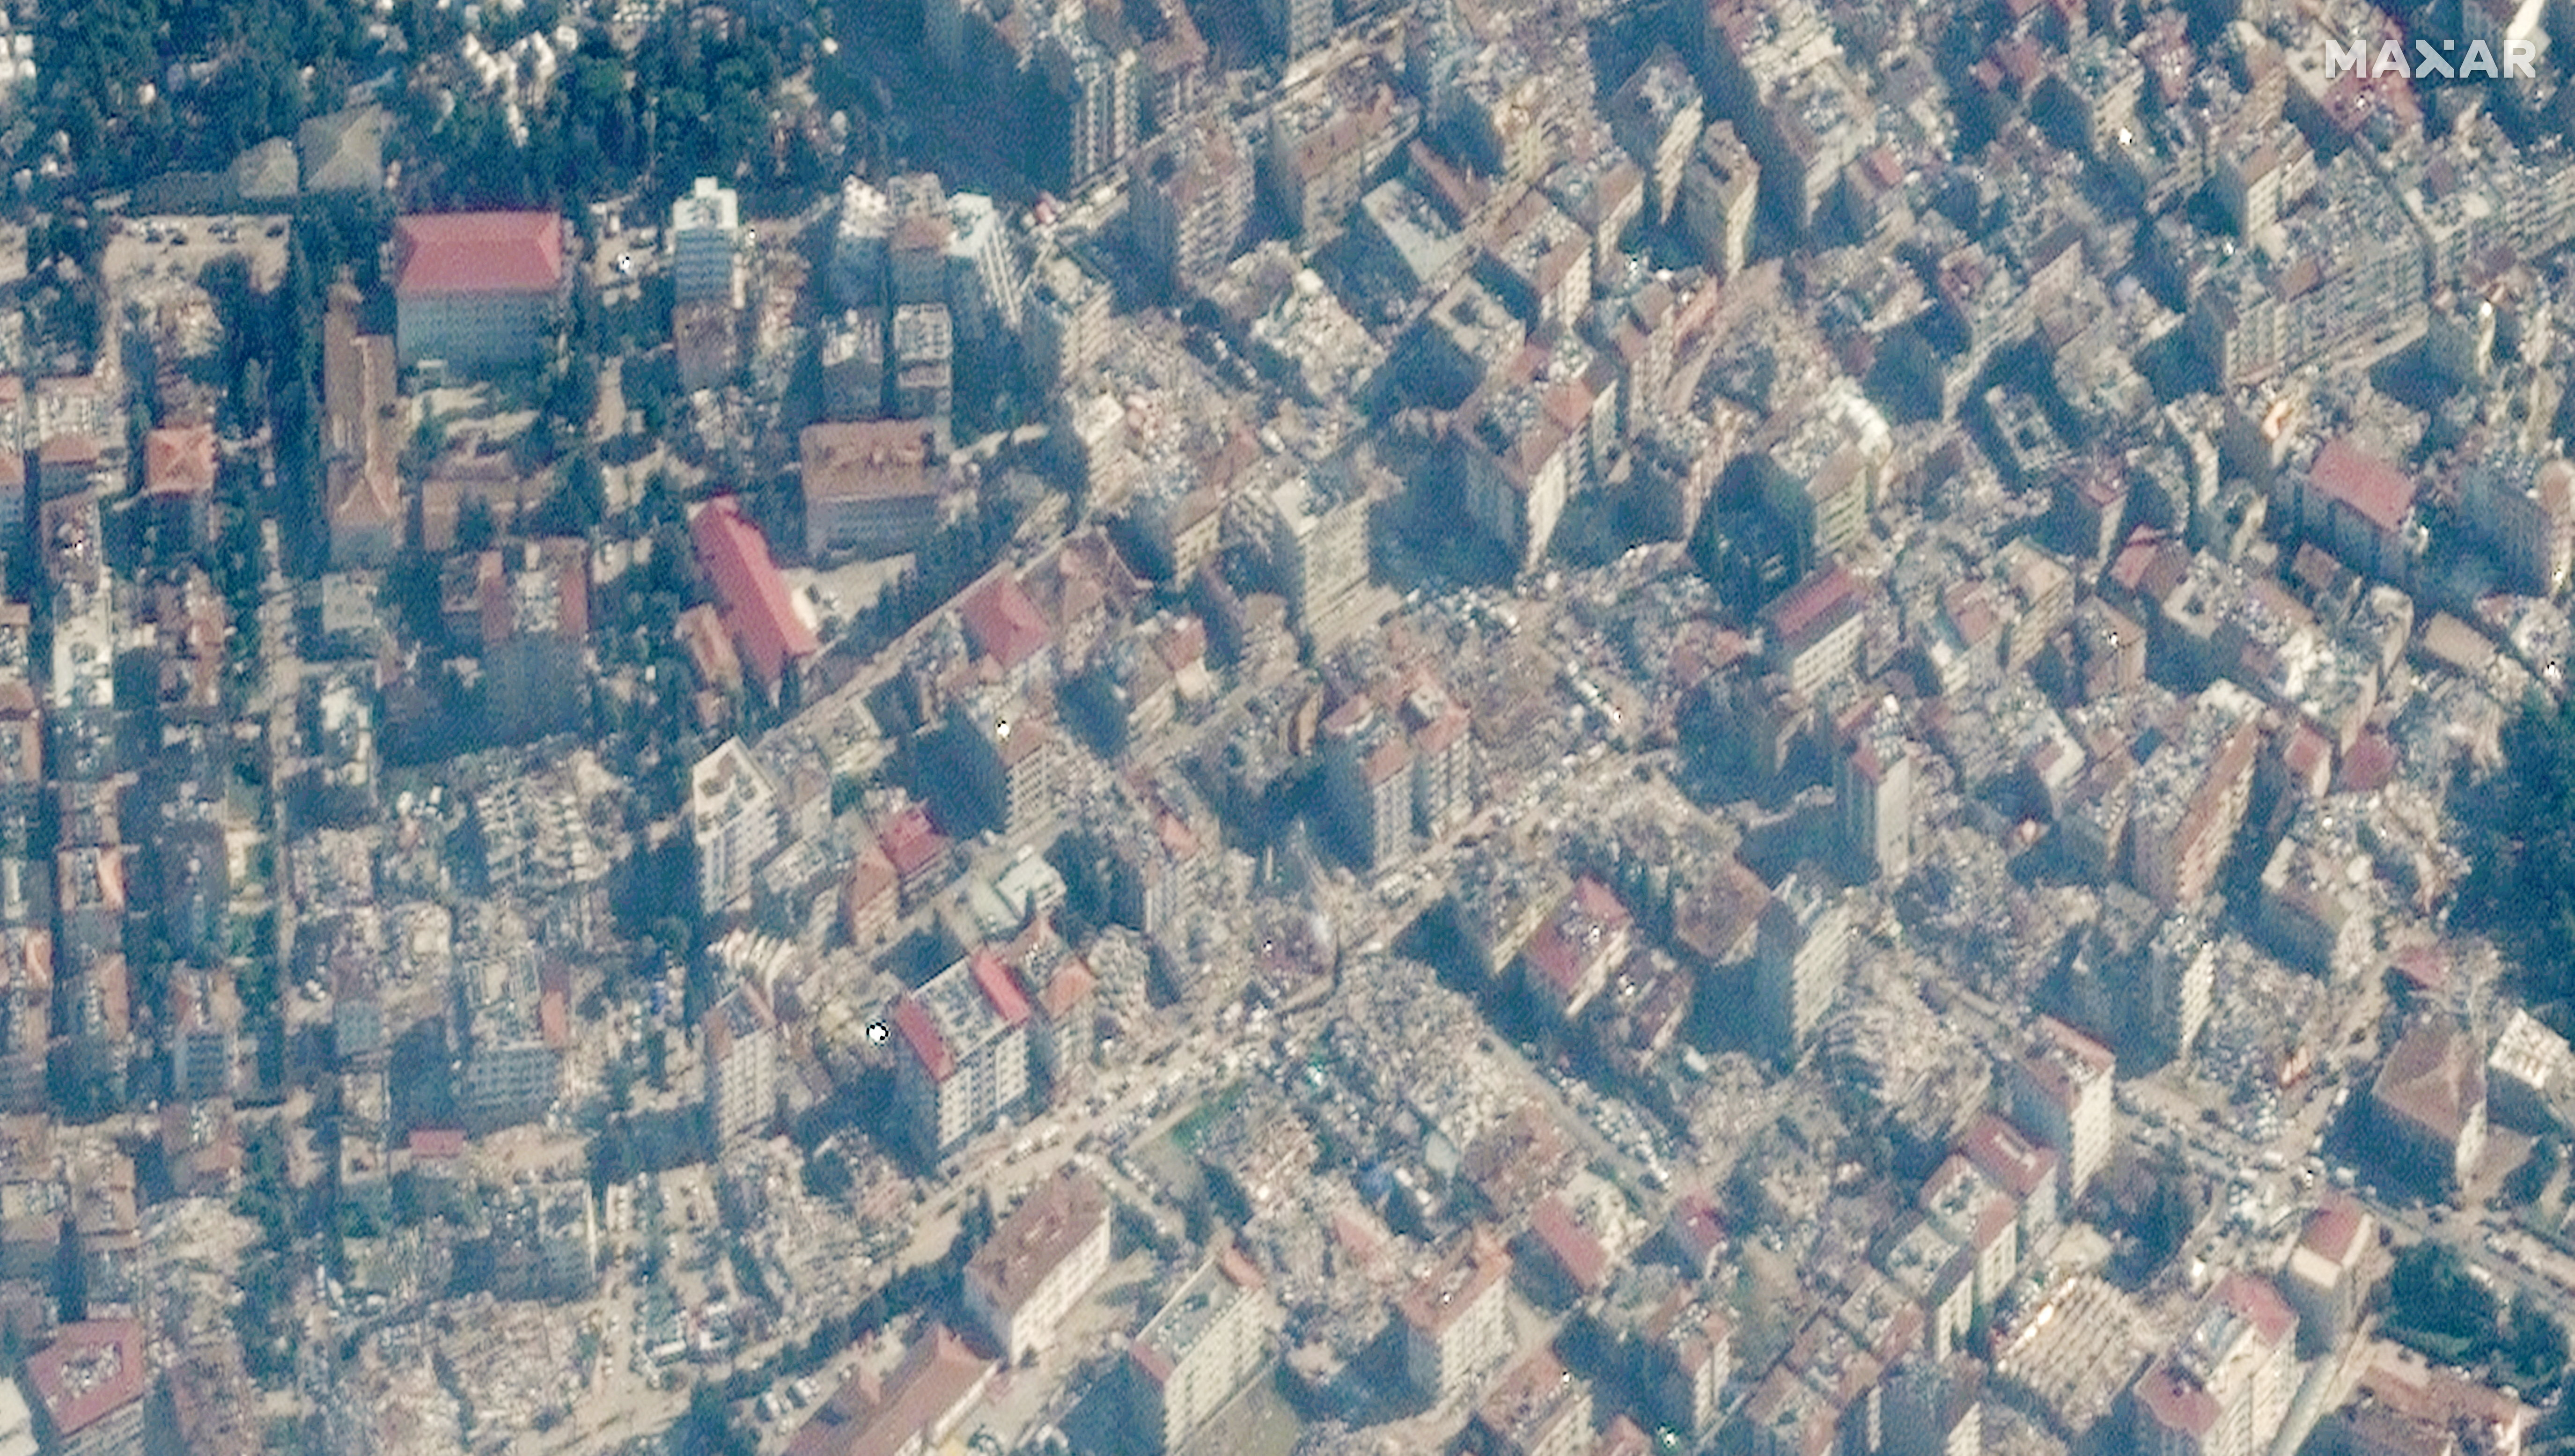 Tras el terremoto que azotó Turquía, así quedaron los edificios derrumbados después del sismo en Antakya, Turquía, el 8 de febrero de 2023. Imagen satelital ©2023 Maxar Technologies/Handout via REUTERS